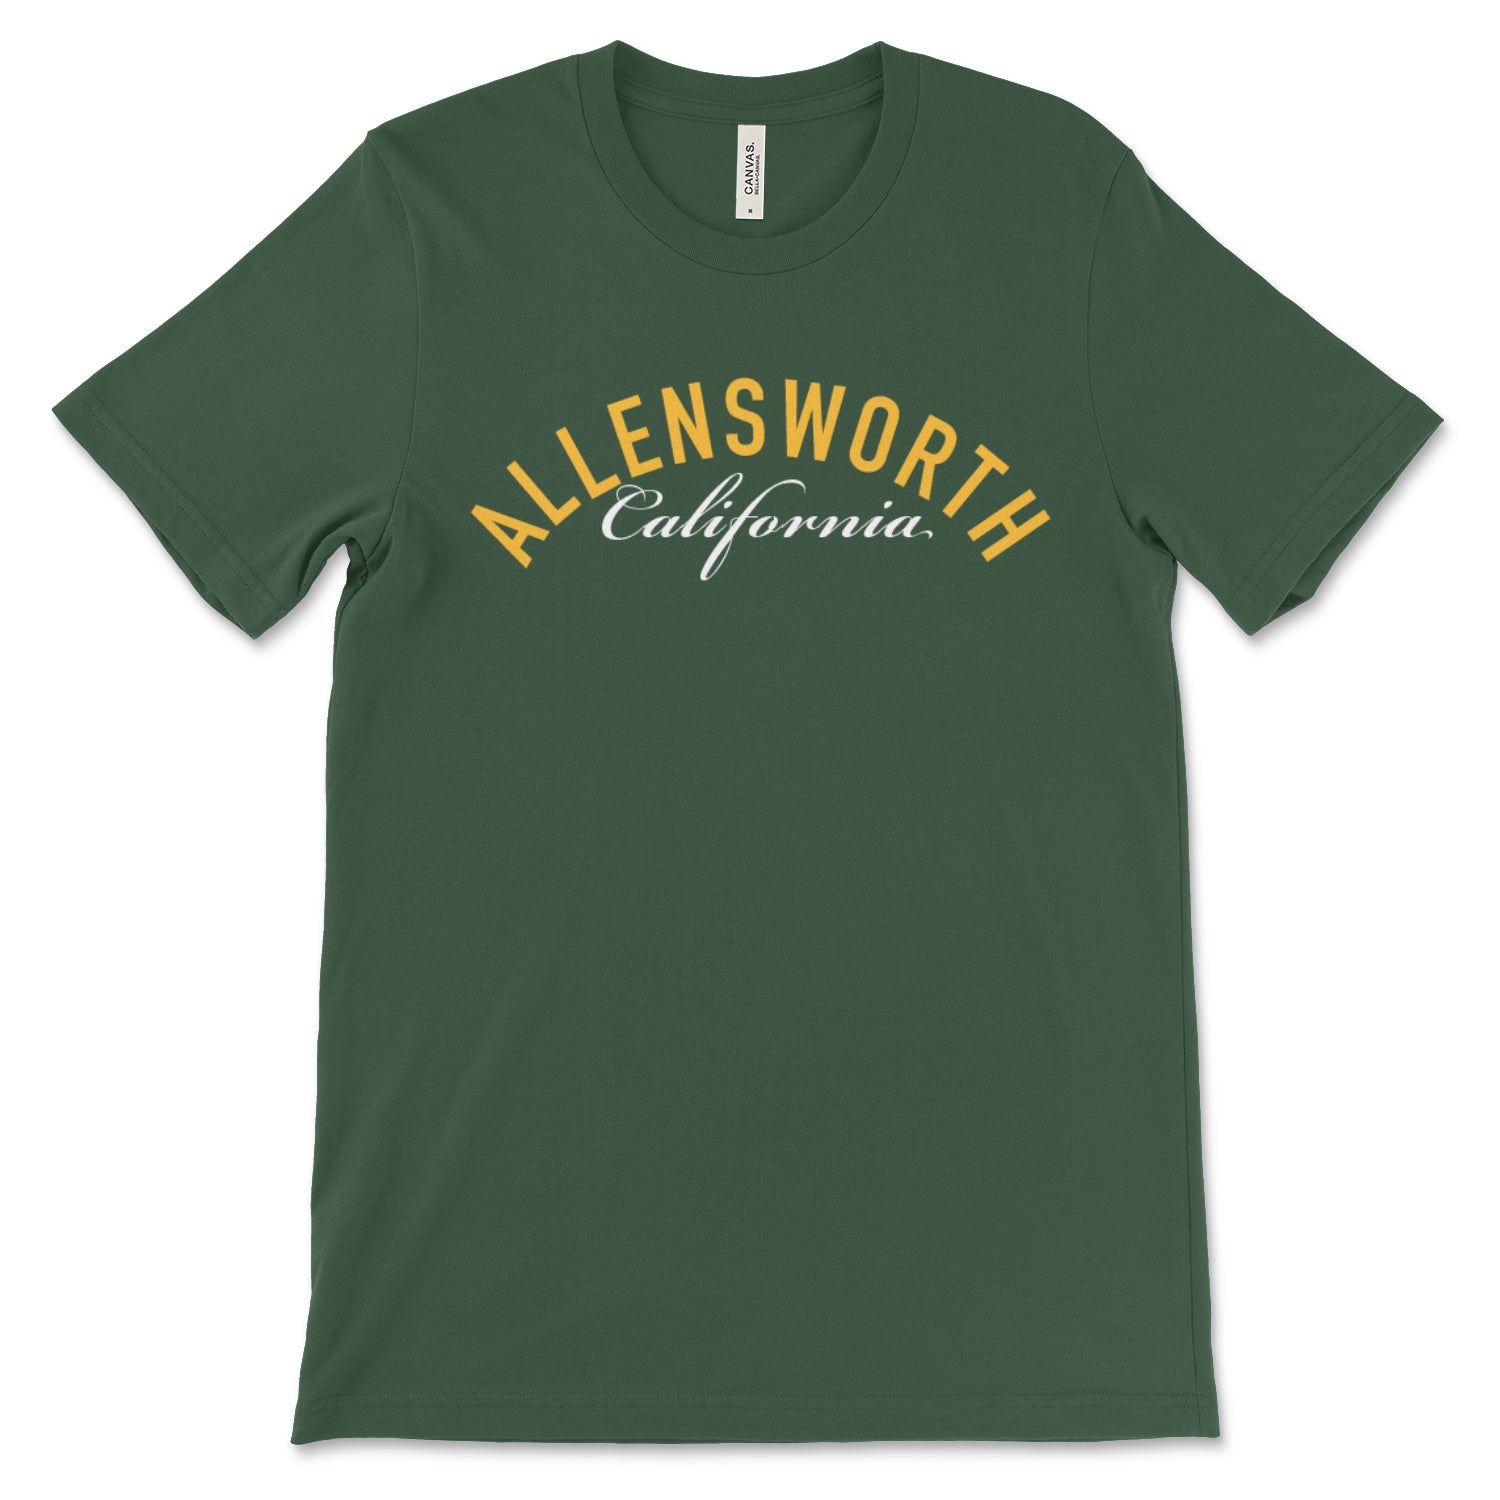 Allensworth, California - Unisex T-Shirt